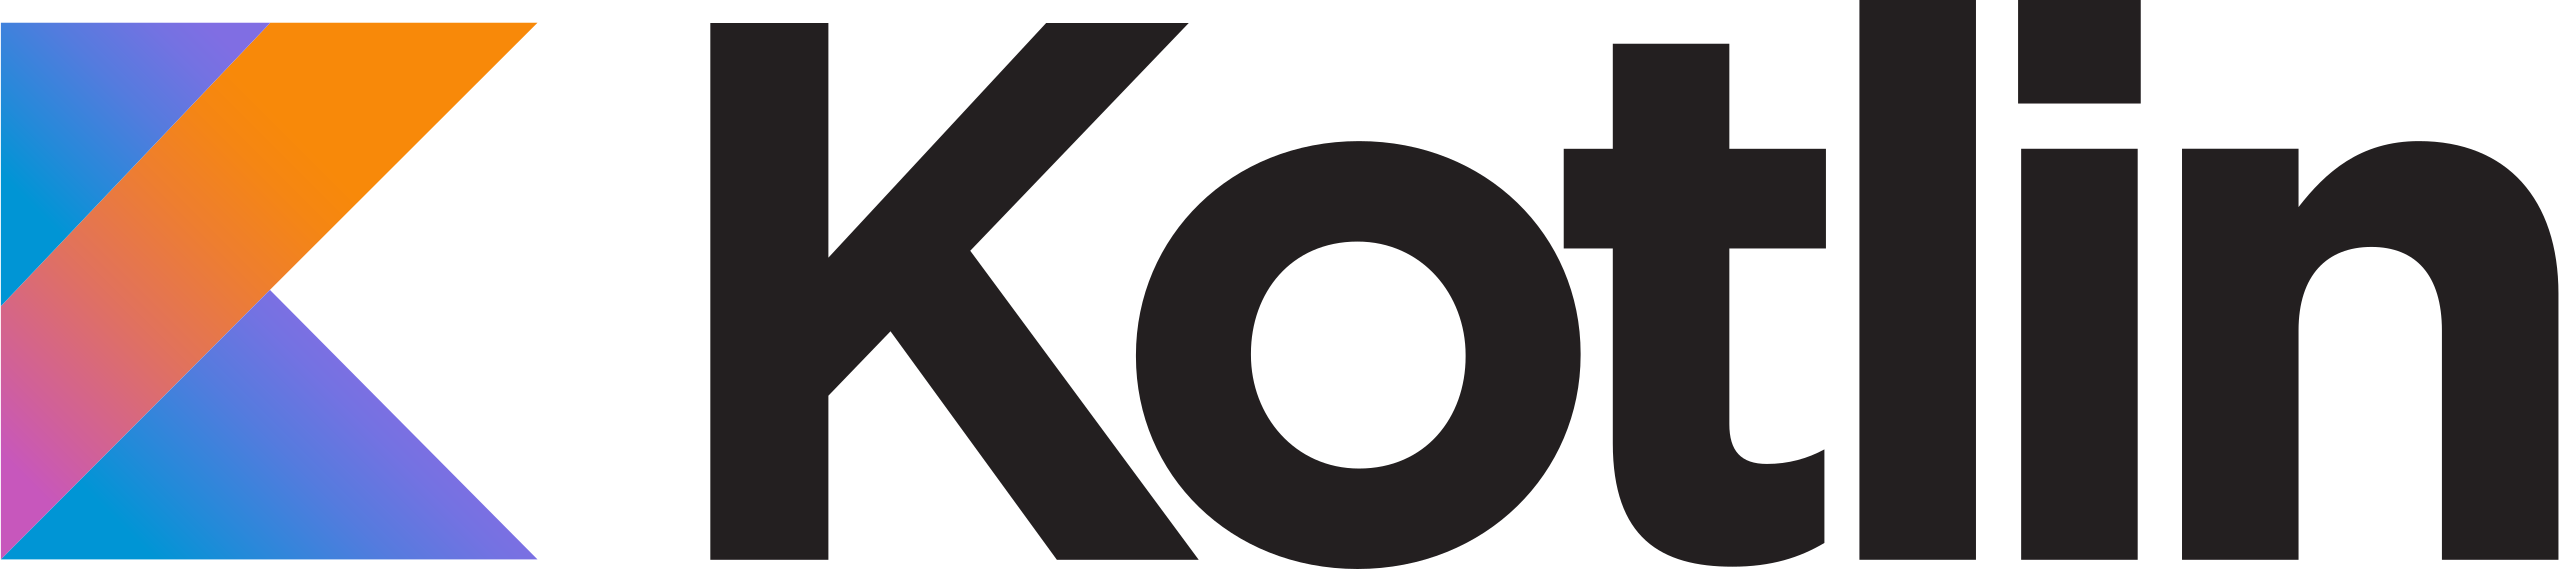 logo kotlin